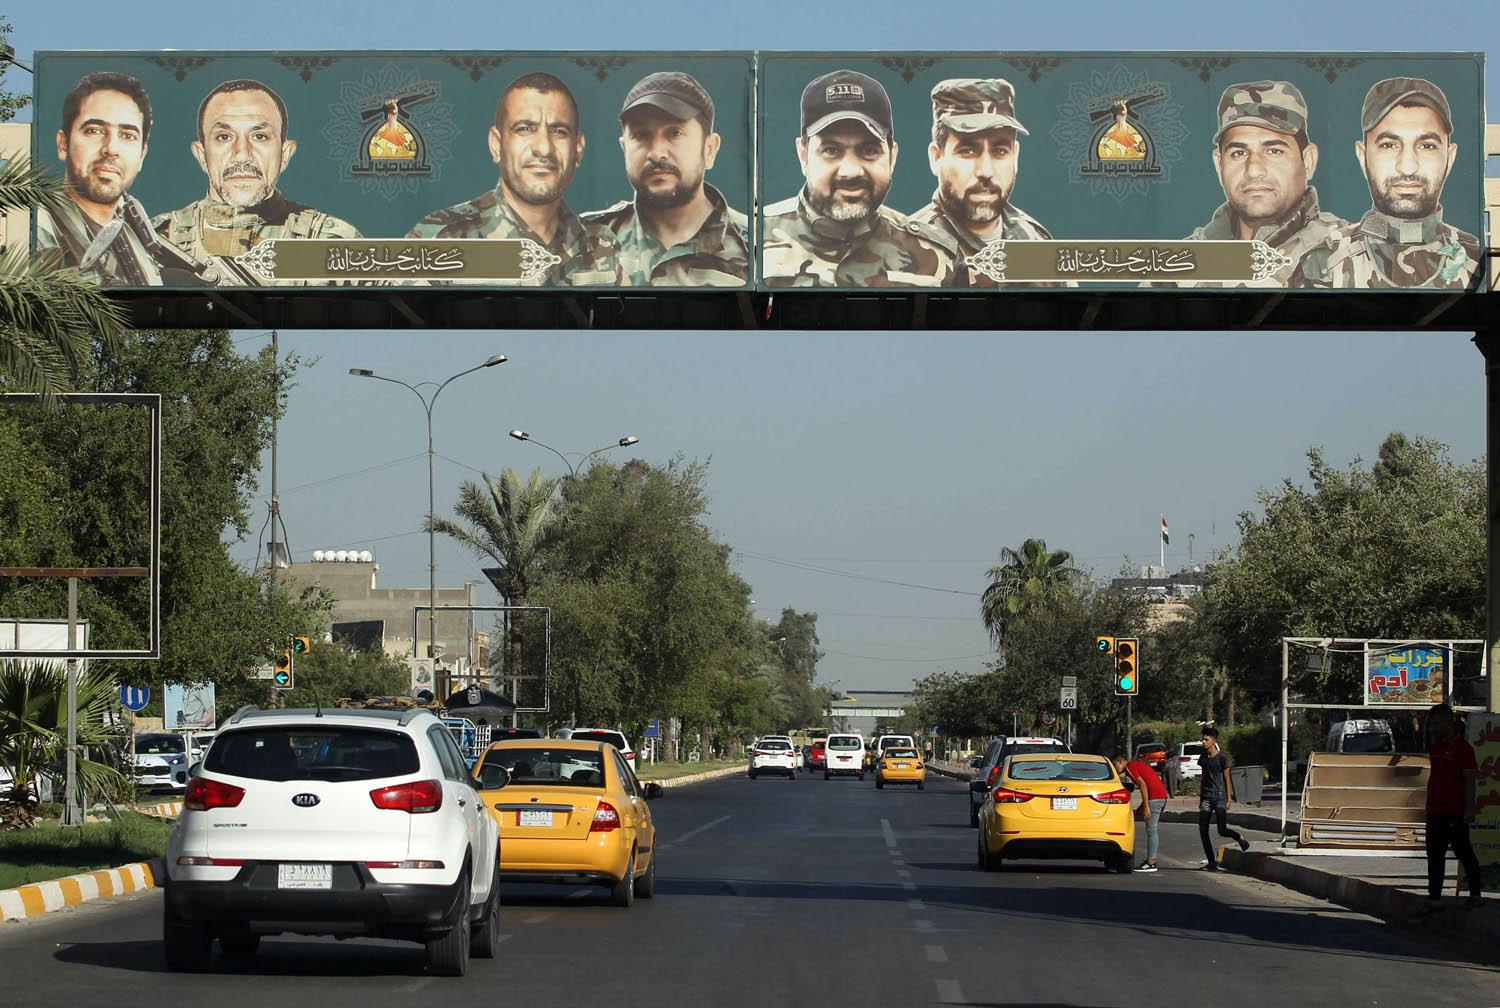 لافتة لحزب الله التابع لإيران في شارع فلسطين في بغداد